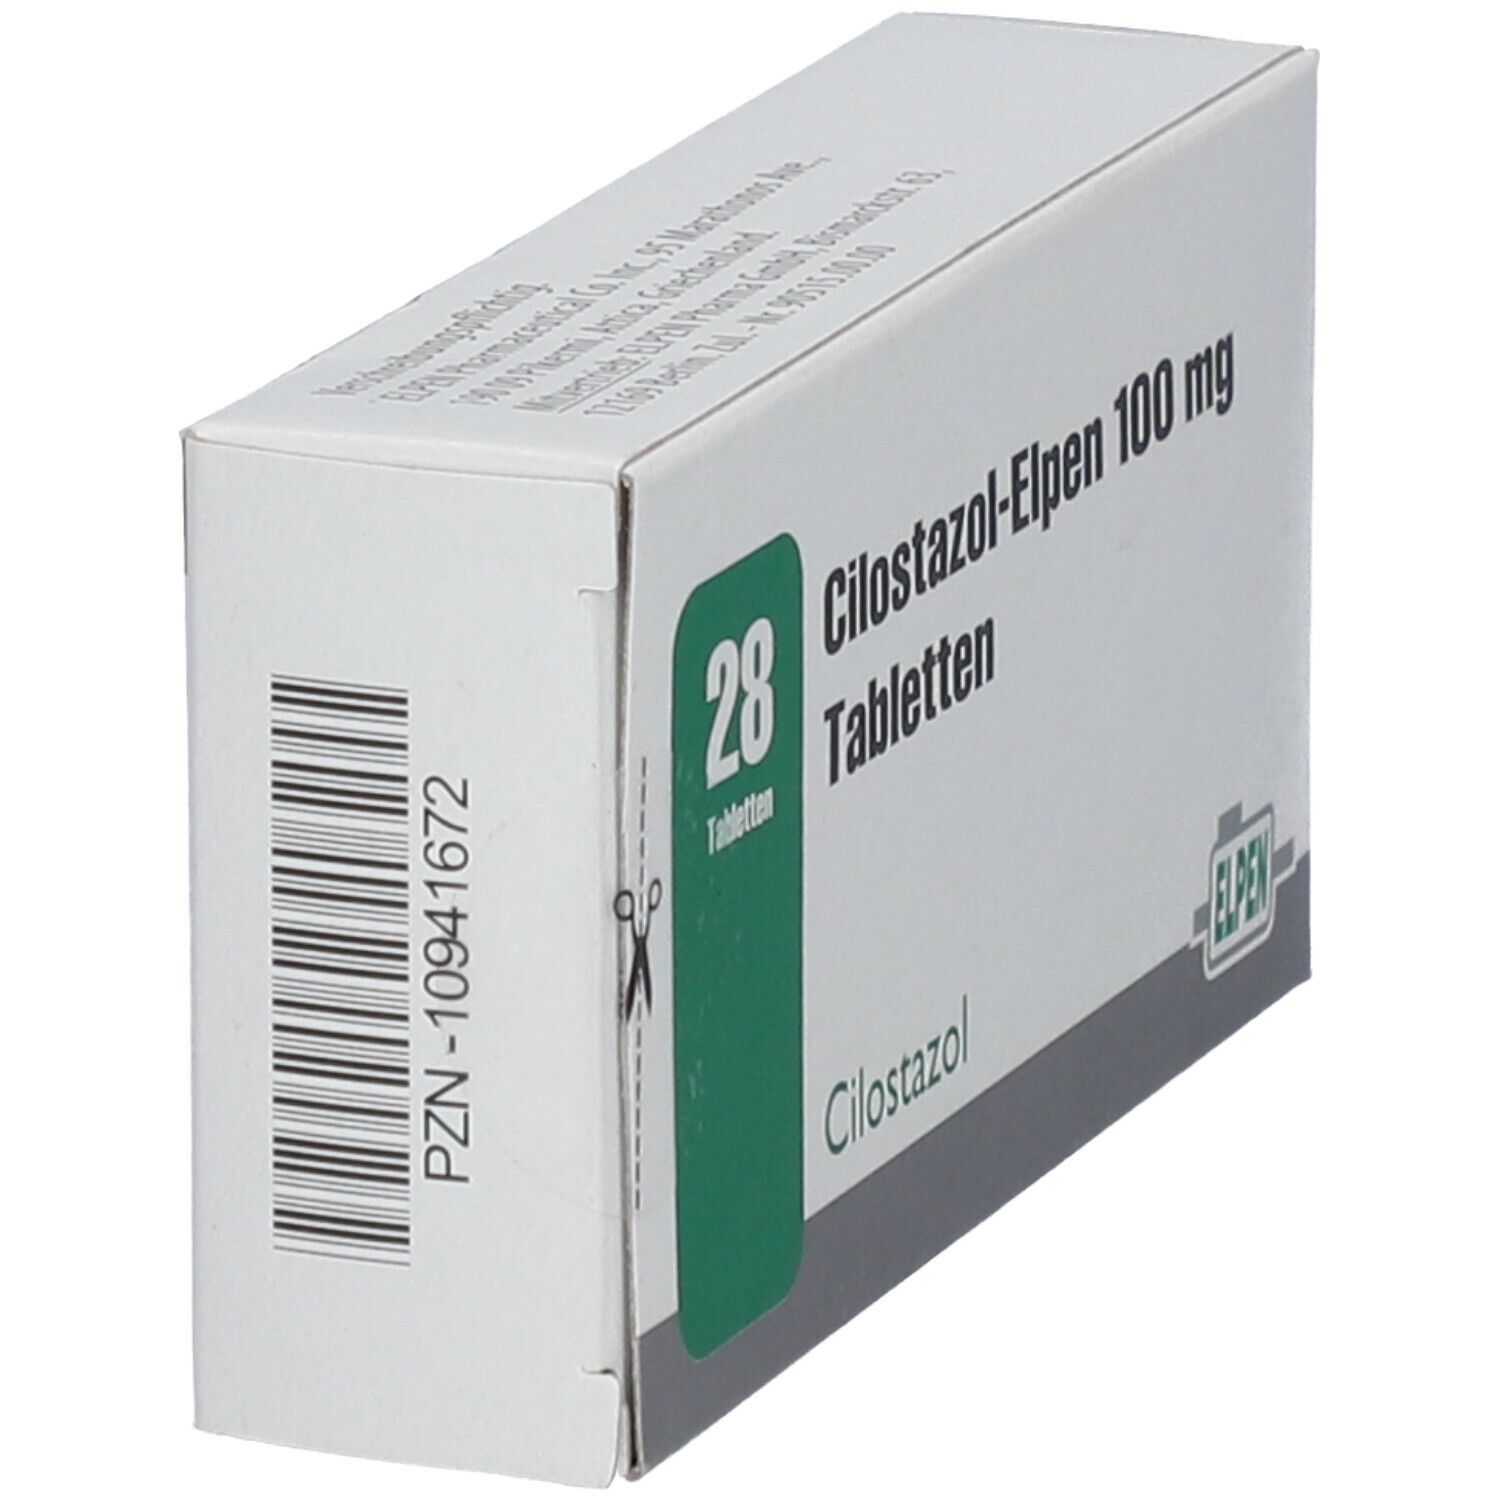 Cilostazol-Elpen 100 mg